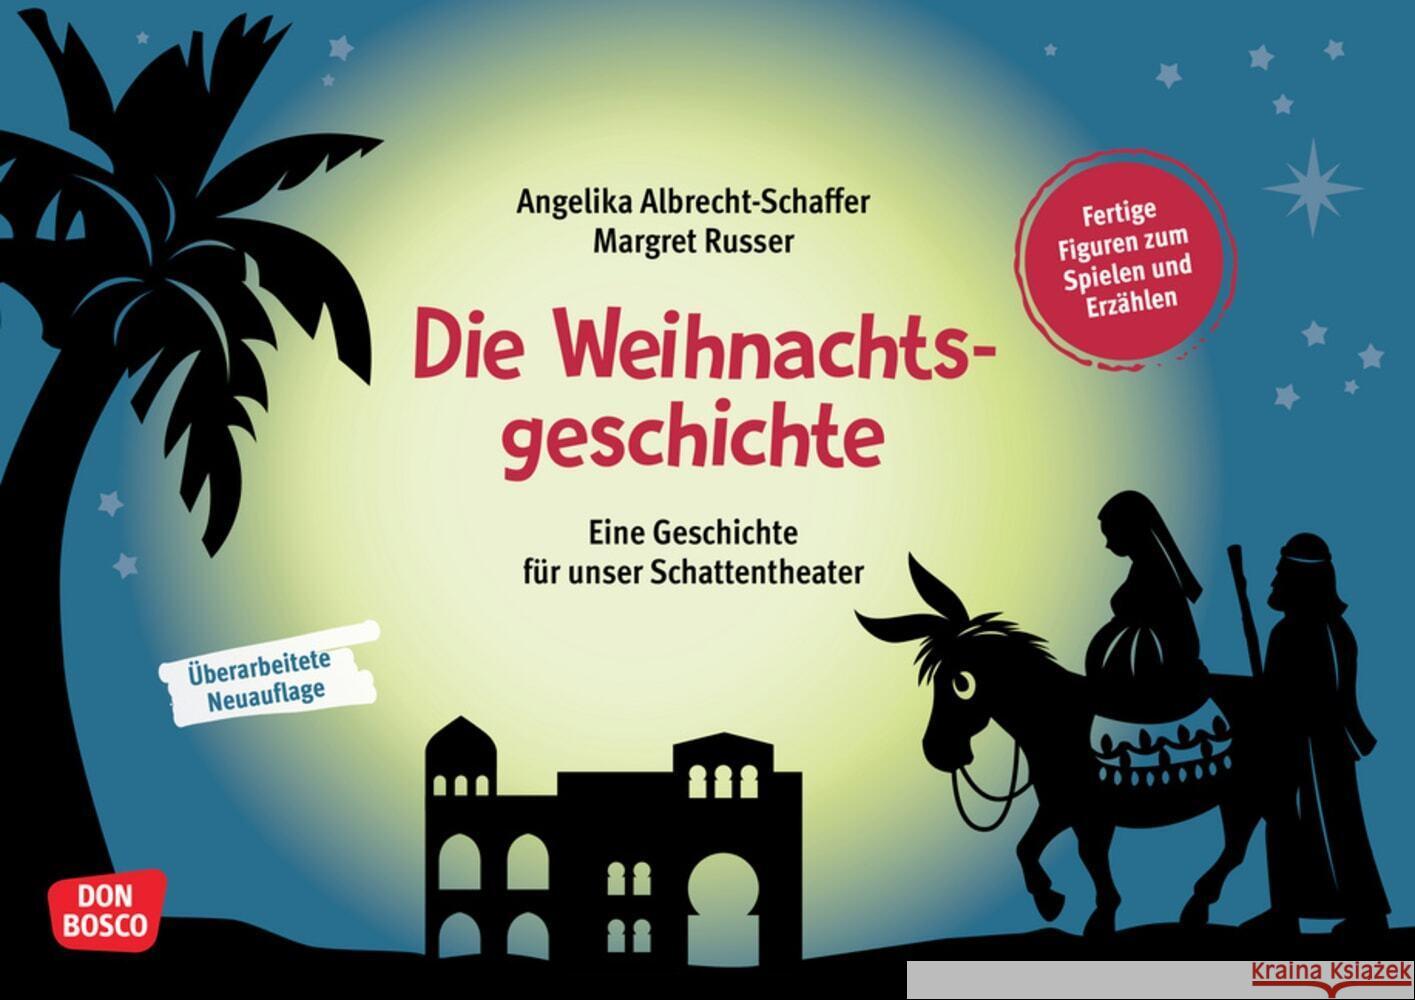 Die Weihnachtsgeschichte, m. 1 Beilage Albrecht-Schaffer, Angelika 4260694920046 Don Bosco Medien